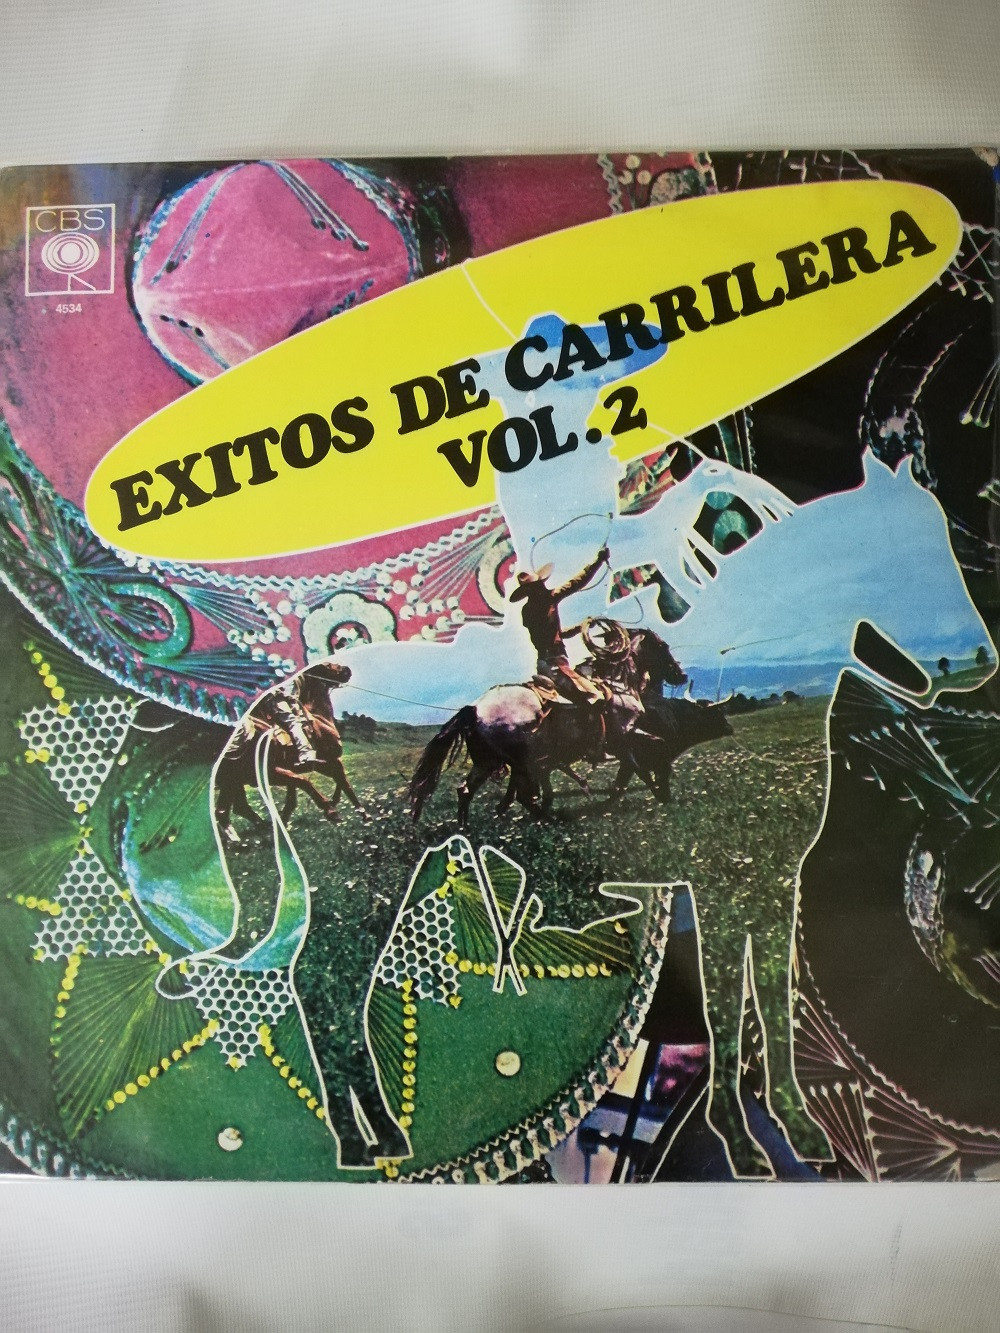 Imagen LP EXITOS DE CARRILERA - EXITOS DE CARRILERA VOL. 2 1